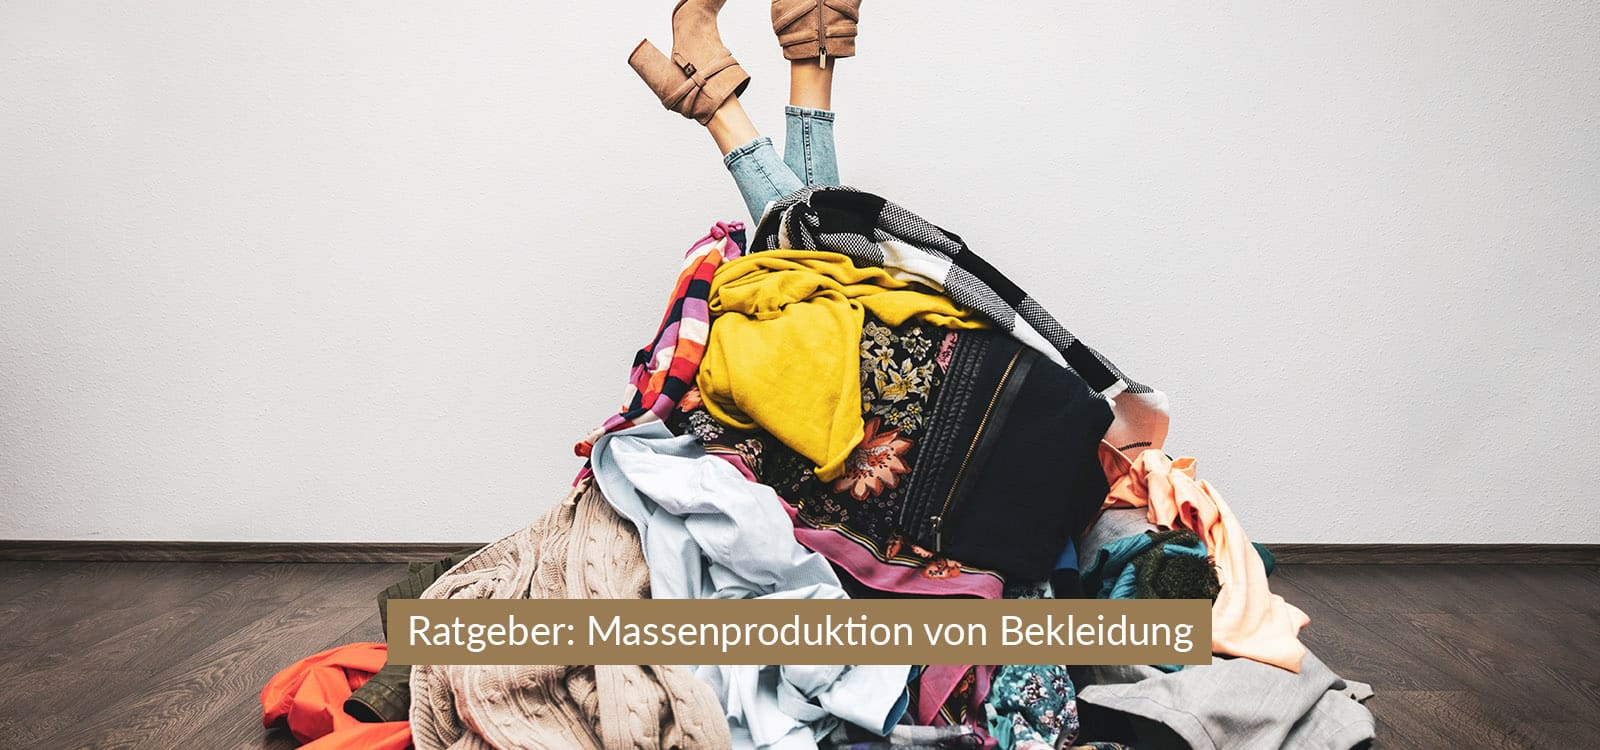 schneiderei-halensee-header-desktop-1600x750-ratgeber-massenproduktion-von-bekleidung